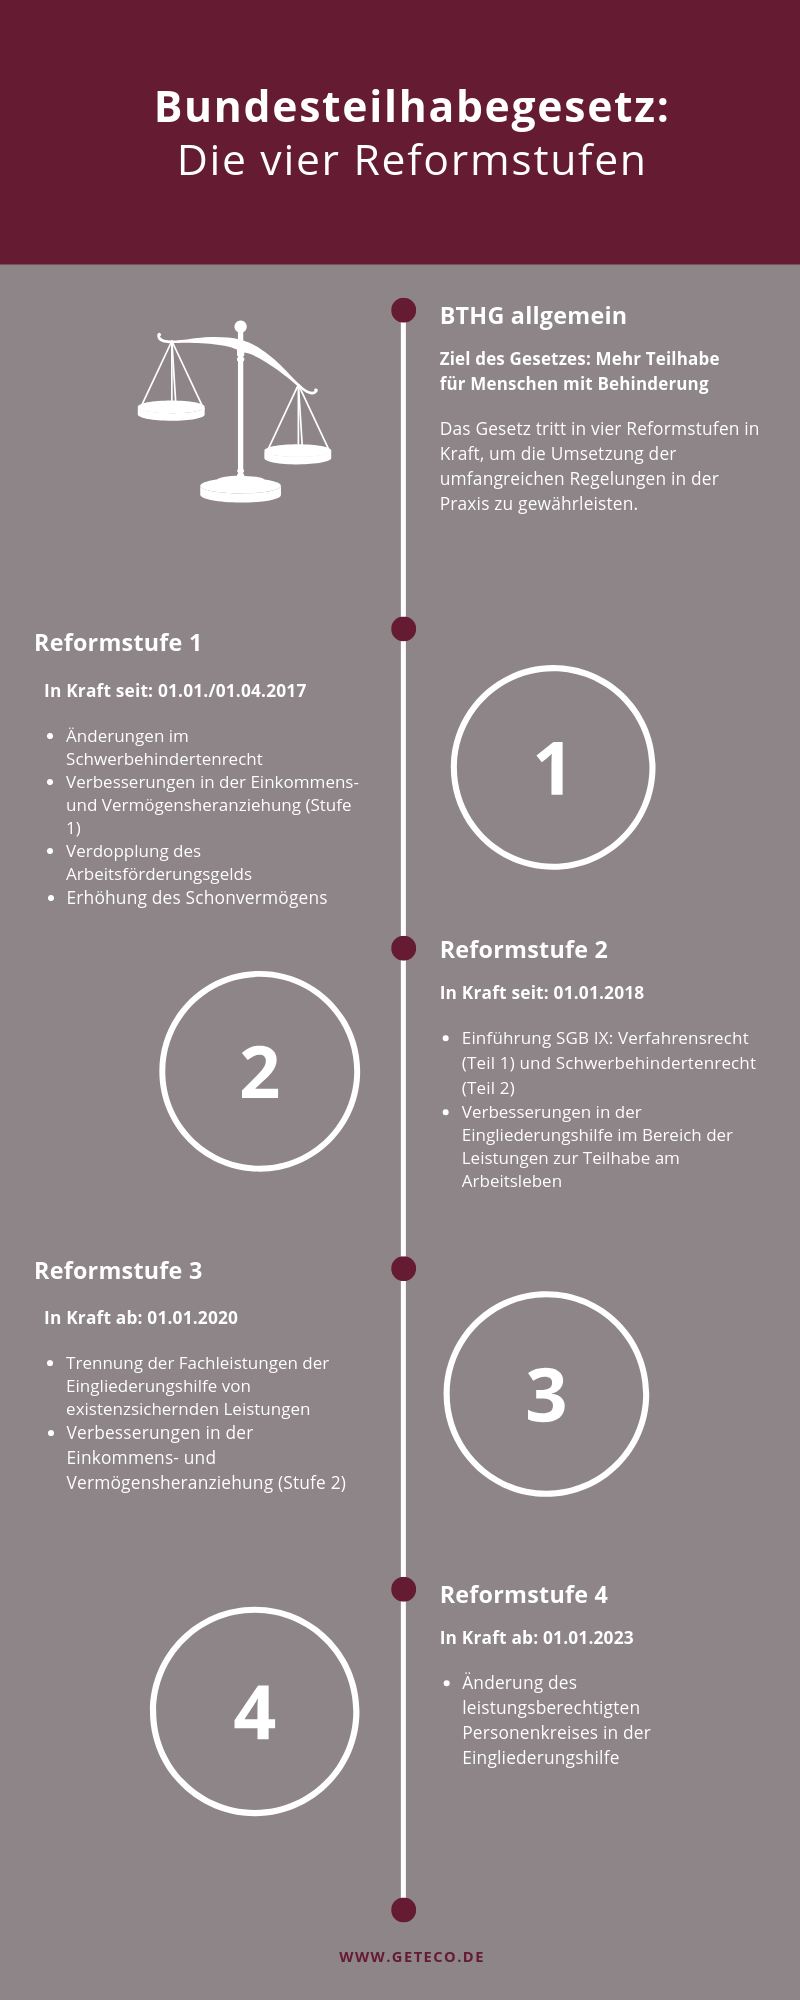 Infografik zu den Reformstufen des BTHG